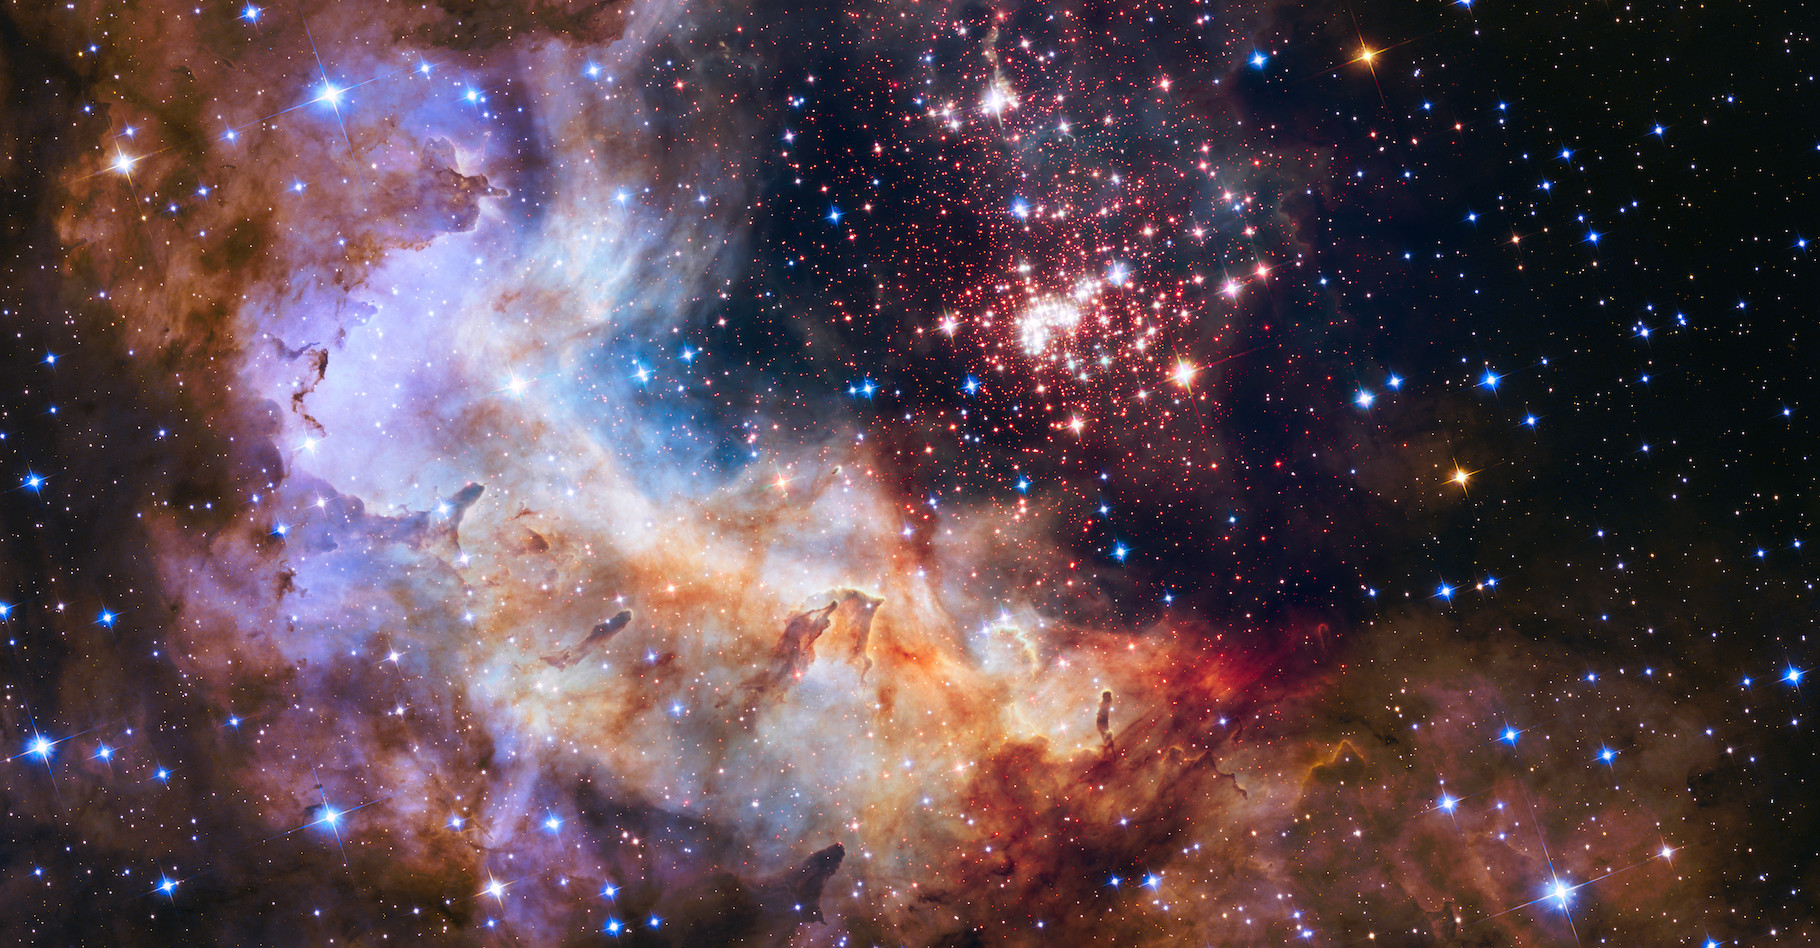 L’amas stellaire Westerlund 2 a été étudié par des astronomes grâce à des images prises par le télescope spatial Hubble. De quoi découvrir à quel point la présence d’étoiles massives dans une région peut perturber l’environnement des autres étoiles. © The Hubble Heritage Team (STScI/AURA), A. Nota (ESA/STScI), and the Westerlund 2 Science Team, Nasa, ESA